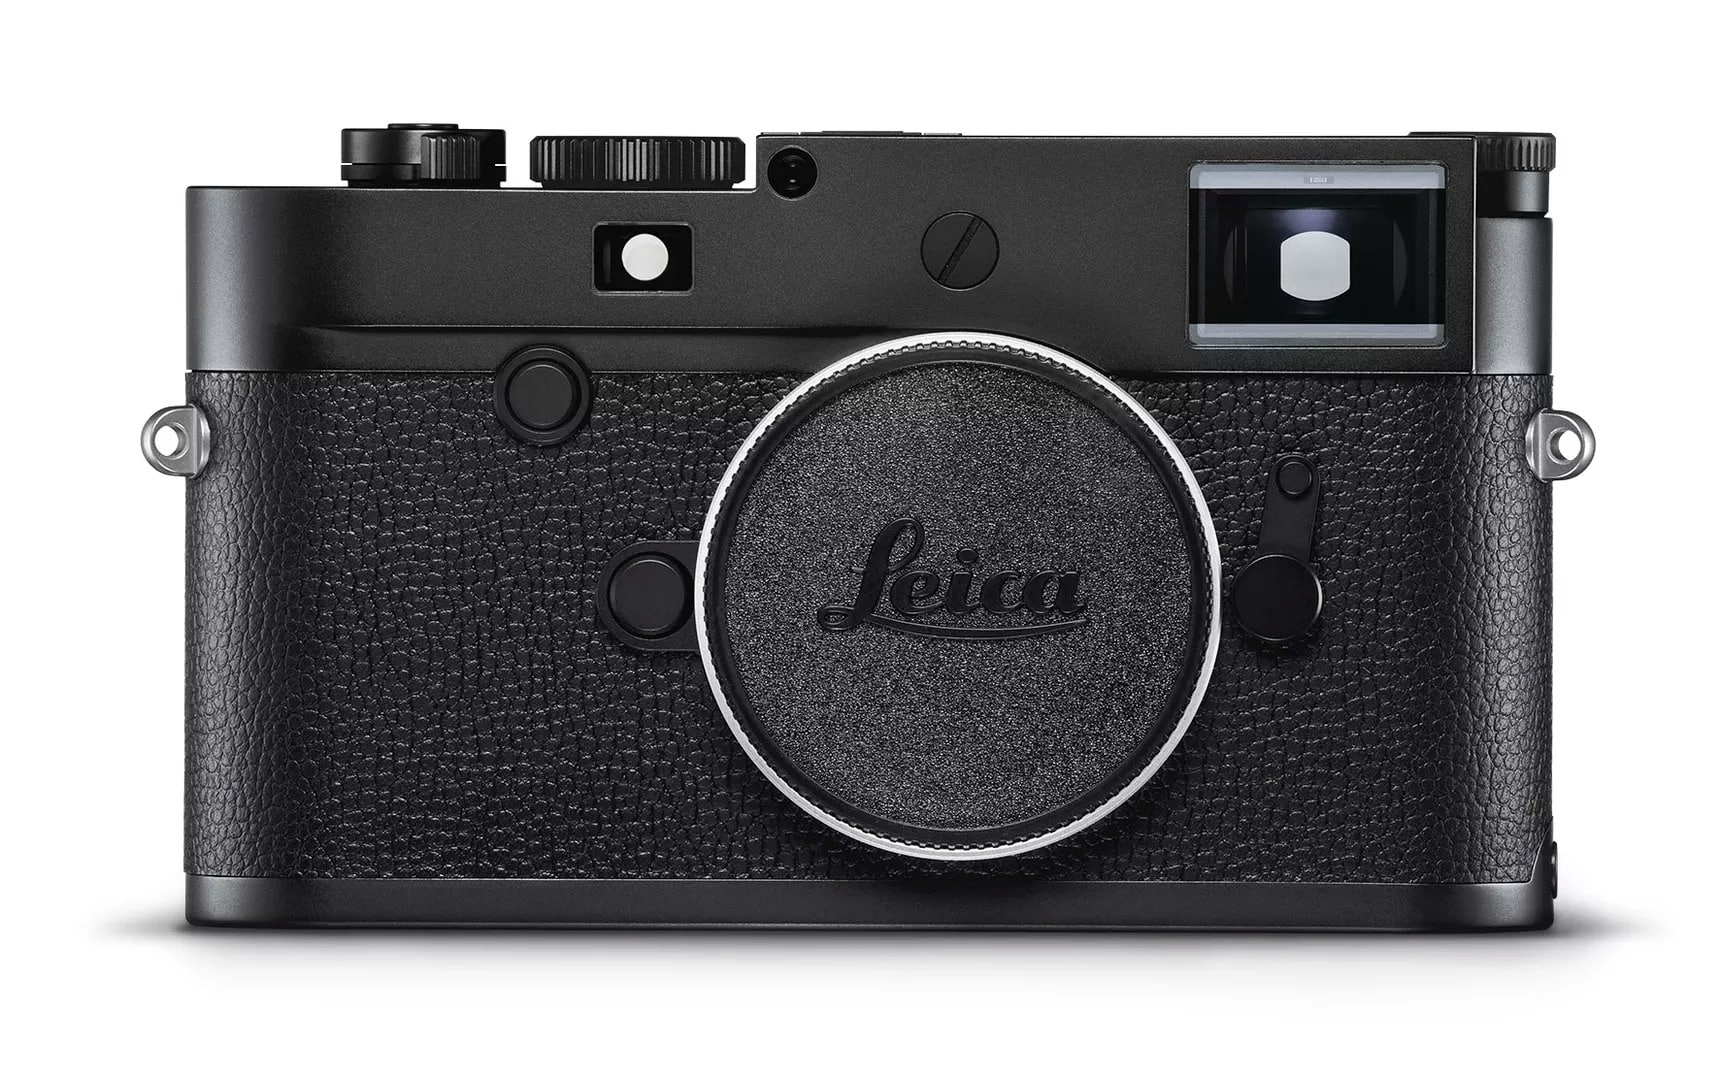 Leica'dan sadece siyah-beyaz fotoğraf çeken yeni bir pahalı makine